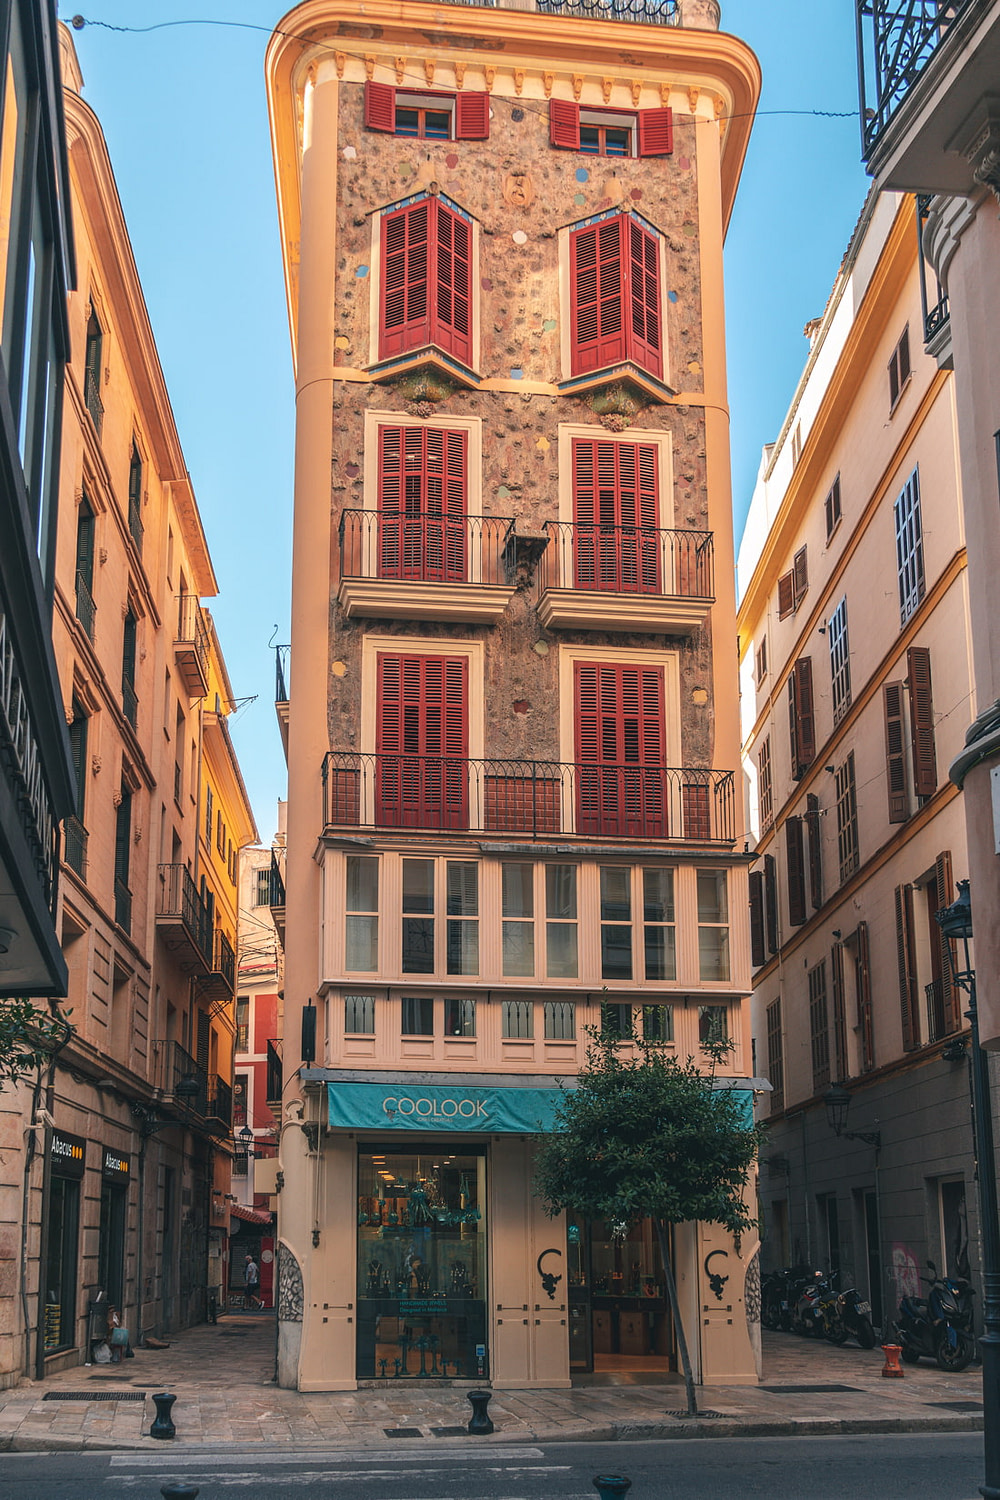 Barcelona Spain Exculsive Shopping Louis Vuitton exterior. Couple